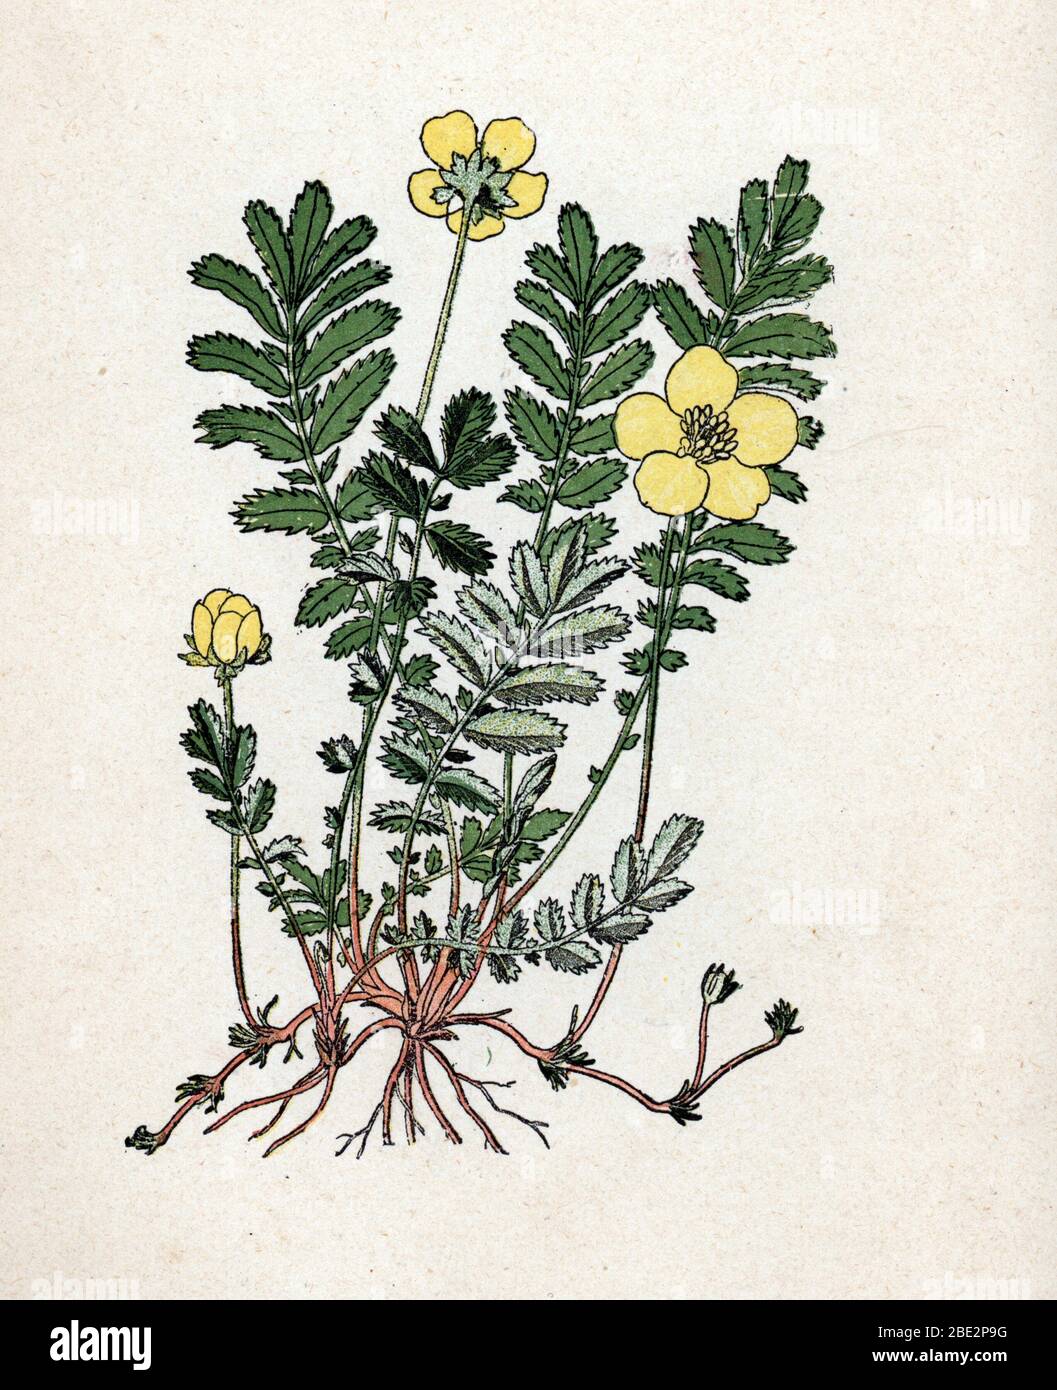 'Potentille' (Argentine ou Potentilla) (cinquefoils) Planche de botanique tiree de 'Atlas colorie des plantes medicinales' de Paul Hariot, 1900 (Botan Stock Photo